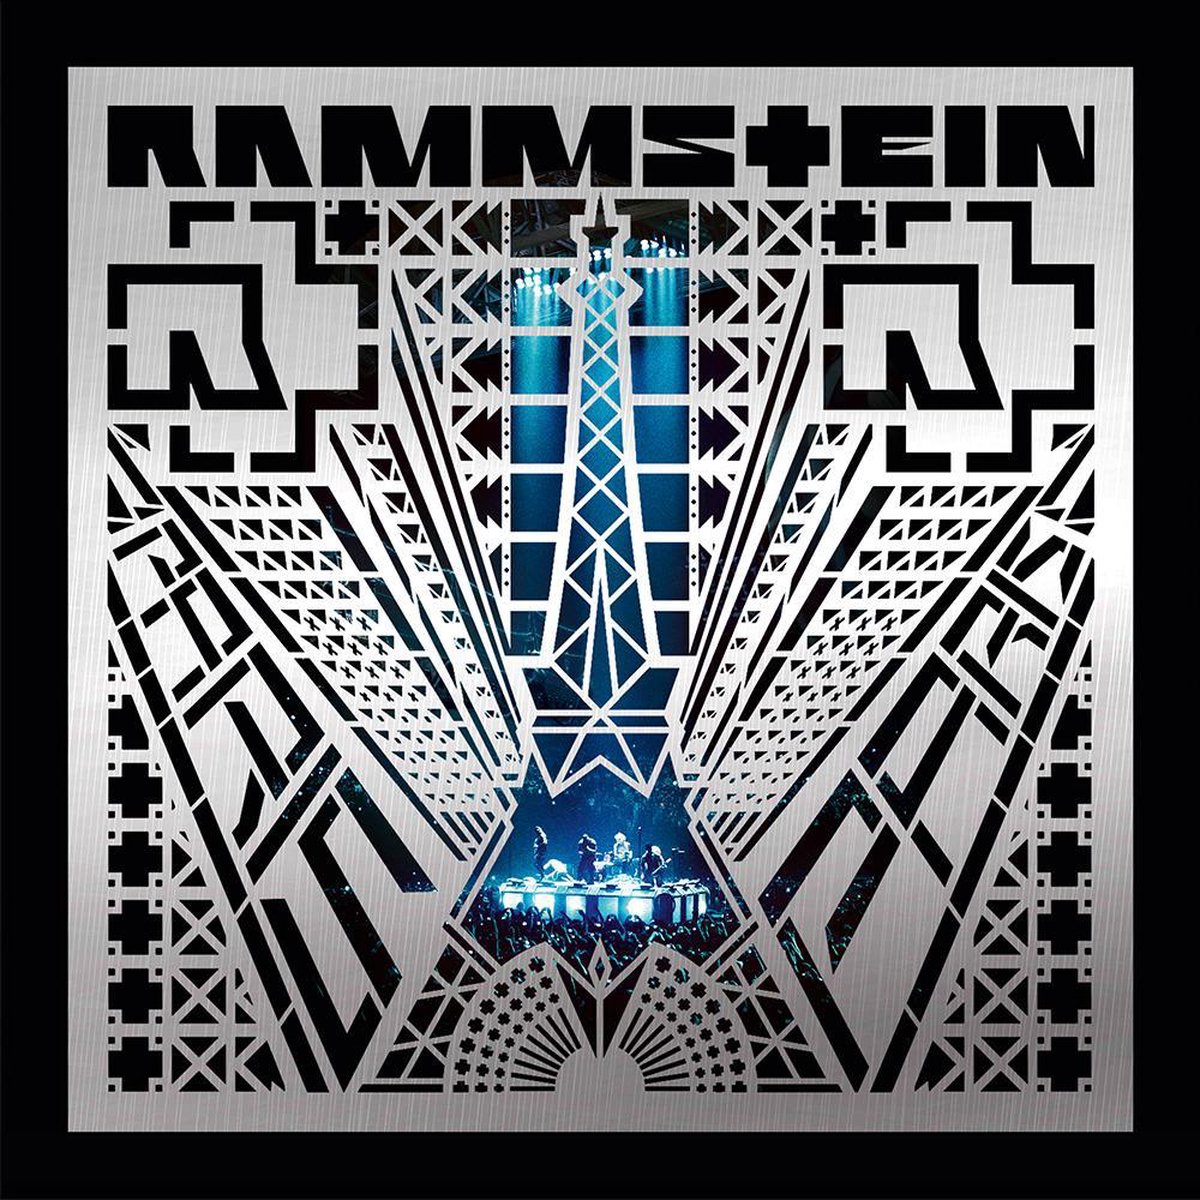 Deutschland 2017 rammstein tour Rammstein Tour